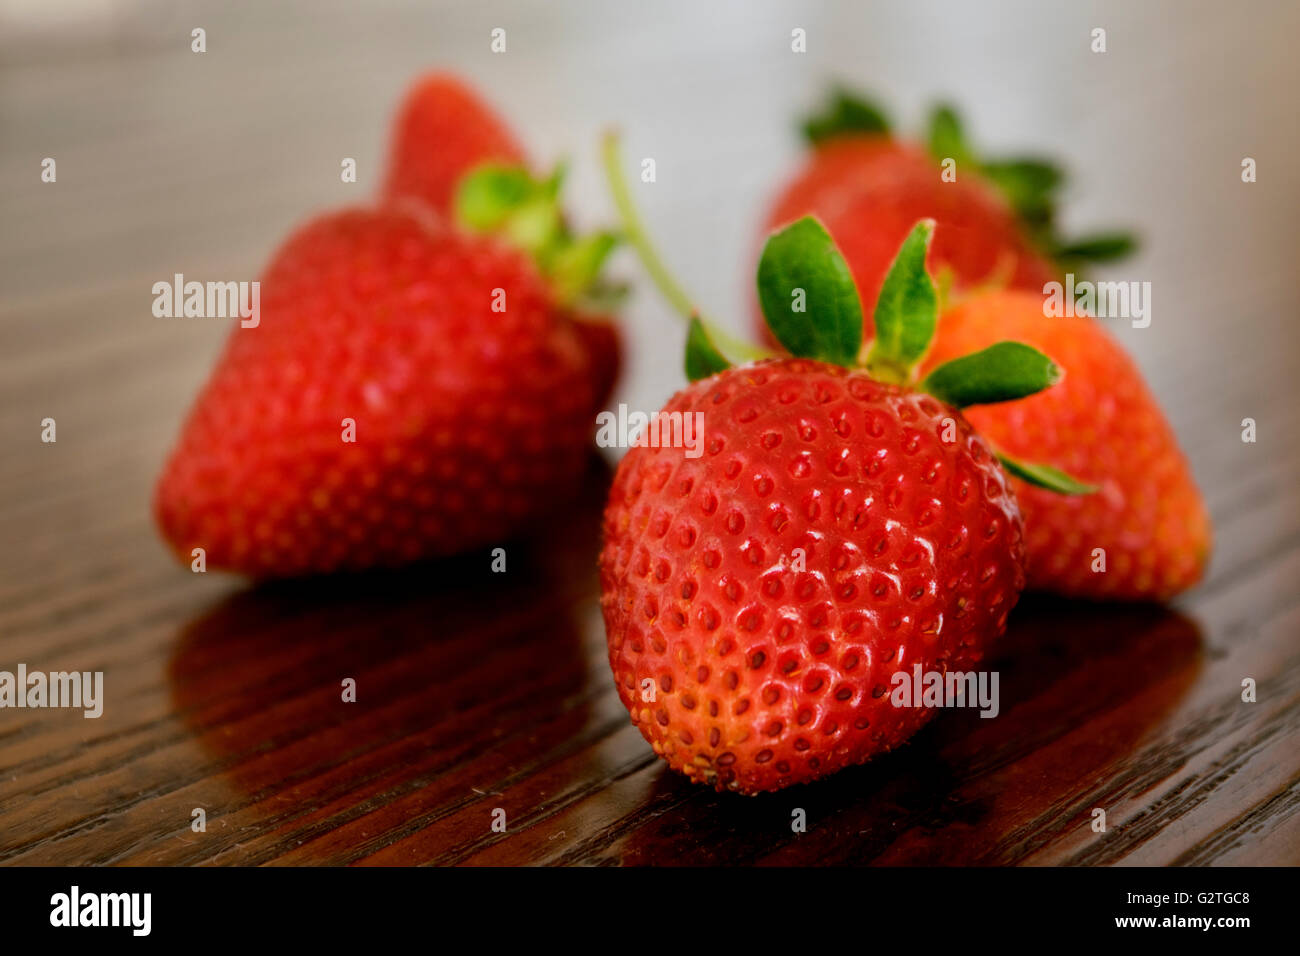 ripe strawberries Stock Photo